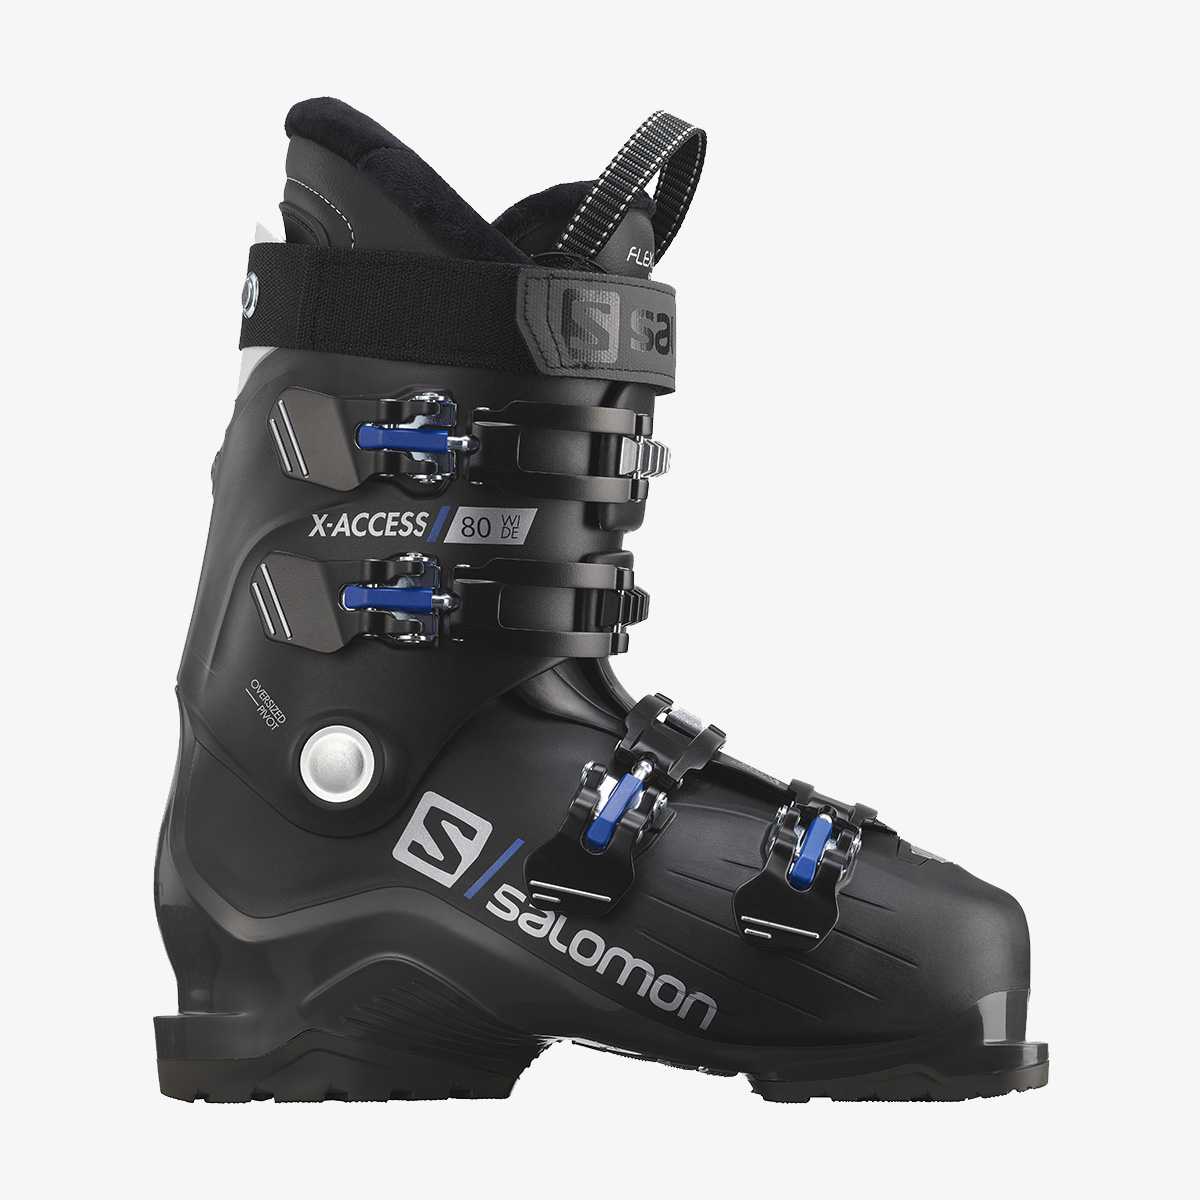 Ботинки лыжные X ACCESS 80 WIDE